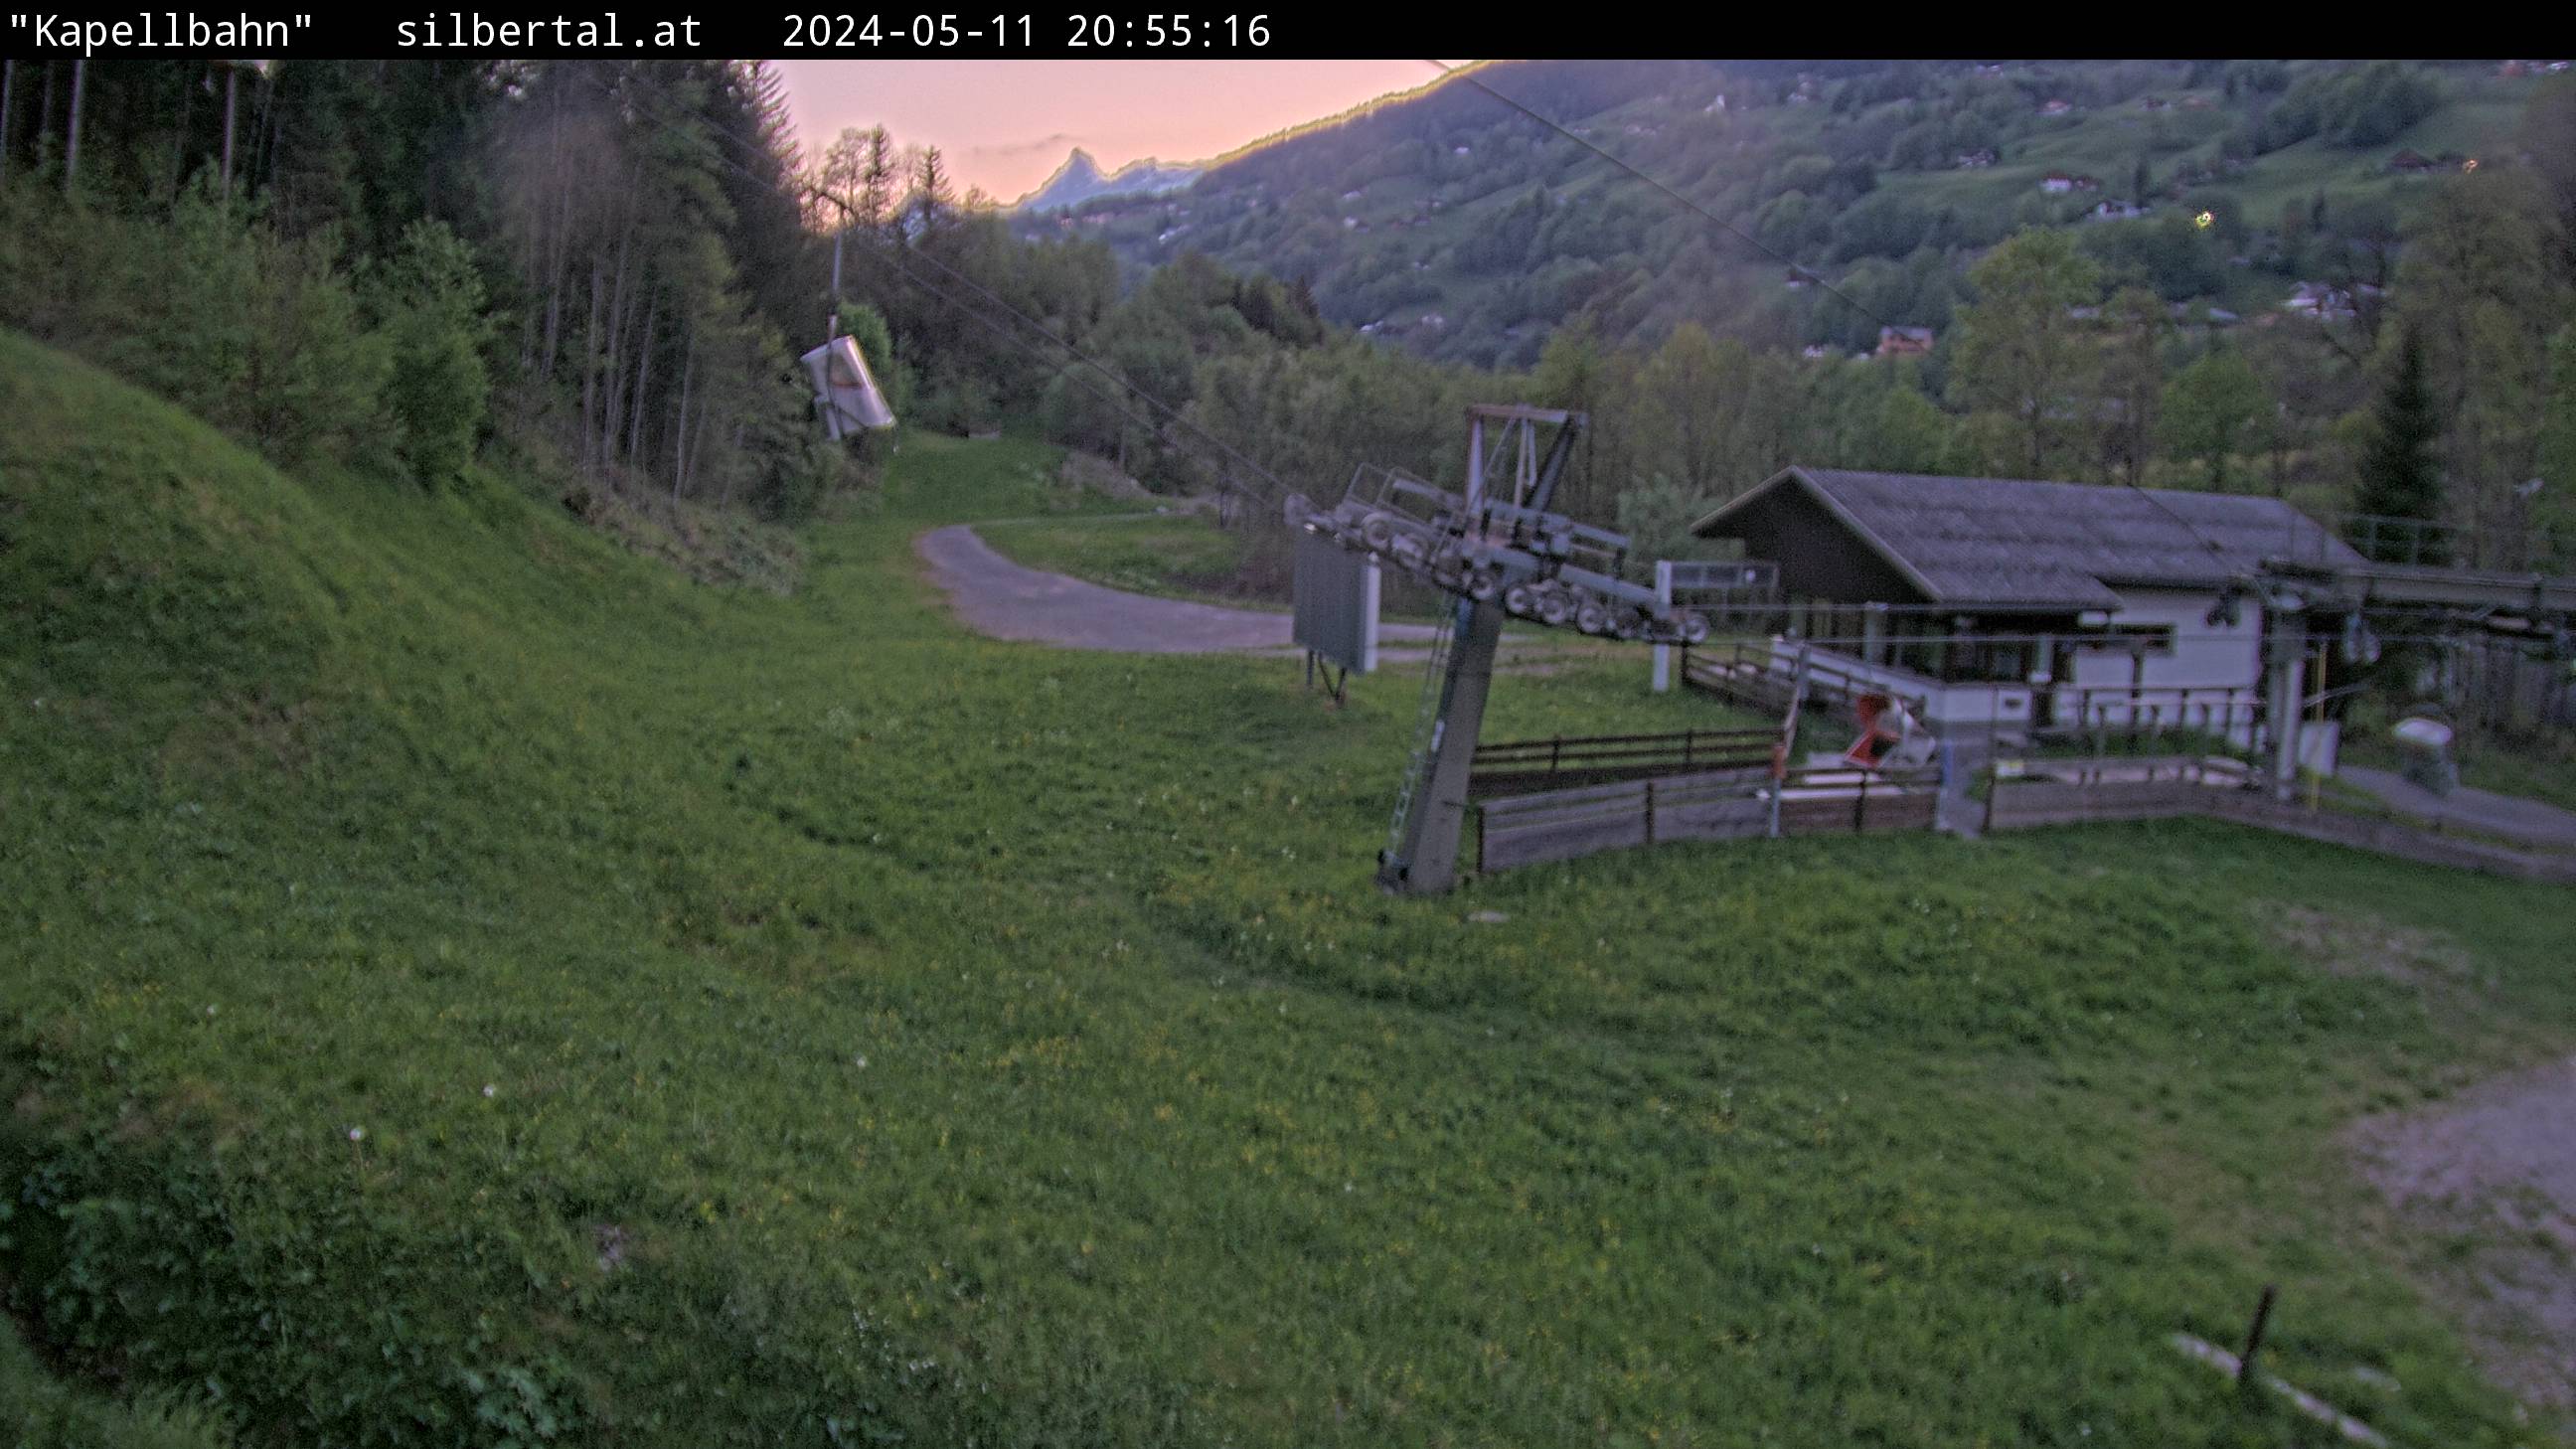 Die Webcam mit diesem Livebild zeigt die Kapellbahn vom Silbertal (http://www.silbertal.at). 